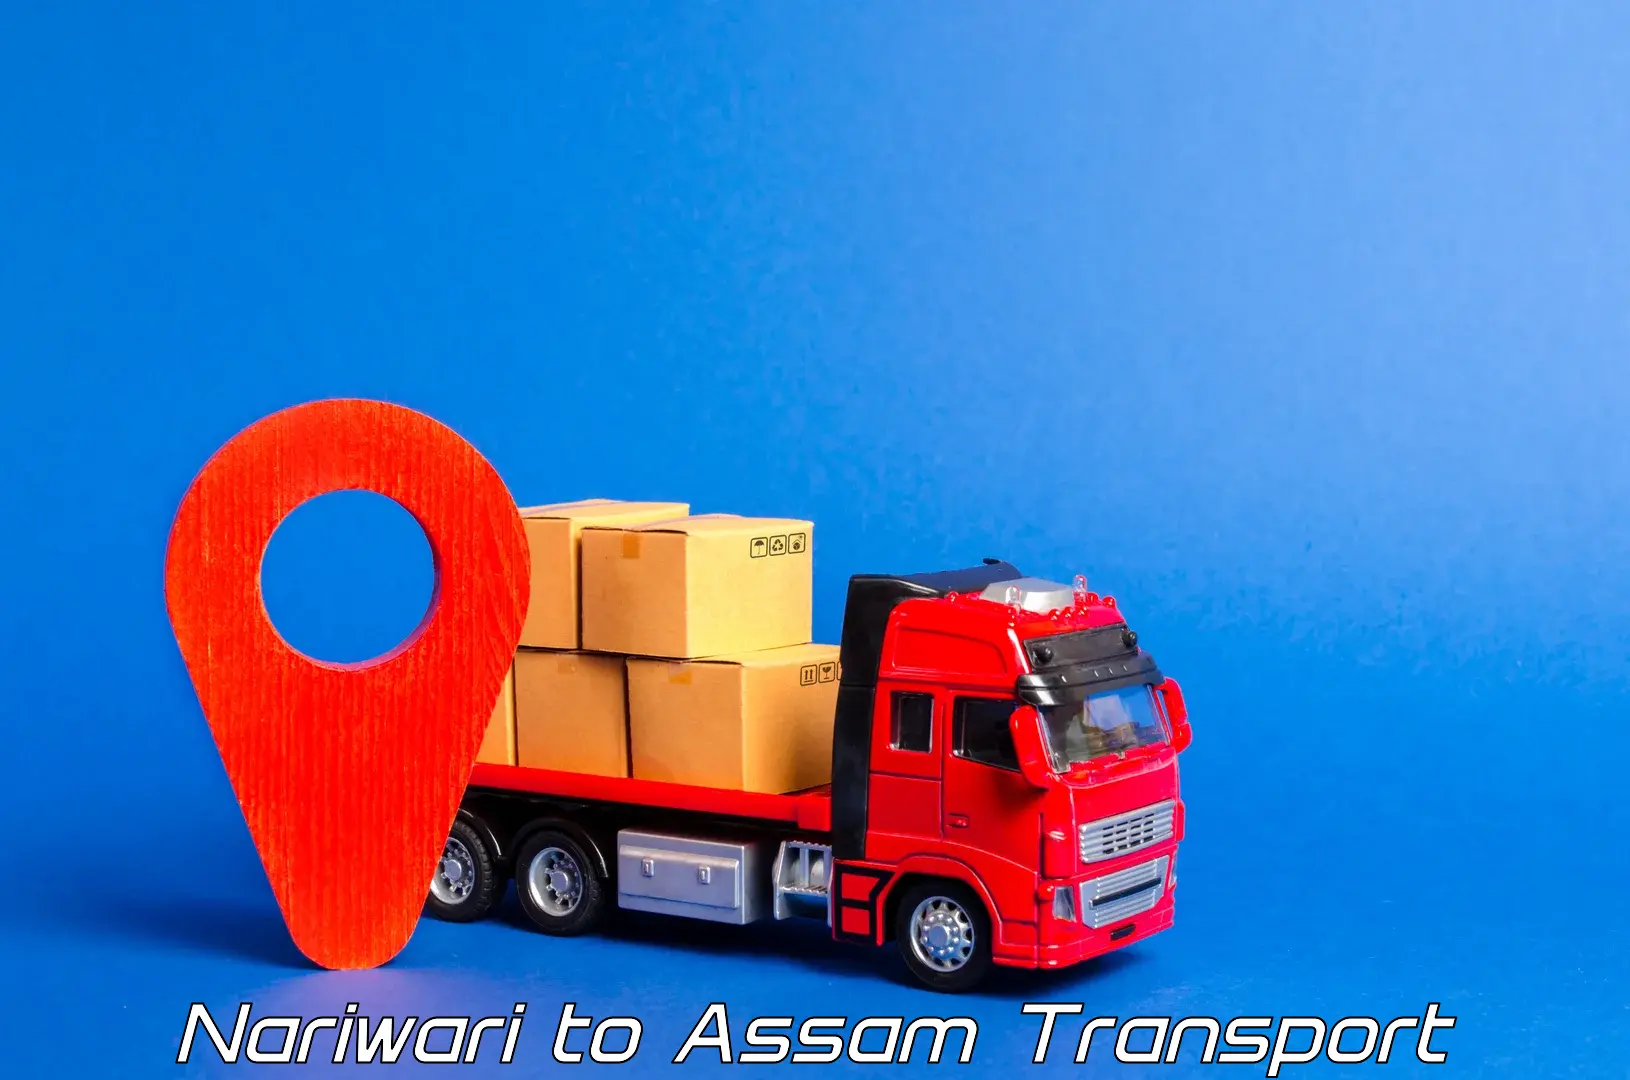 Furniture transport service Nariwari to Kamrup